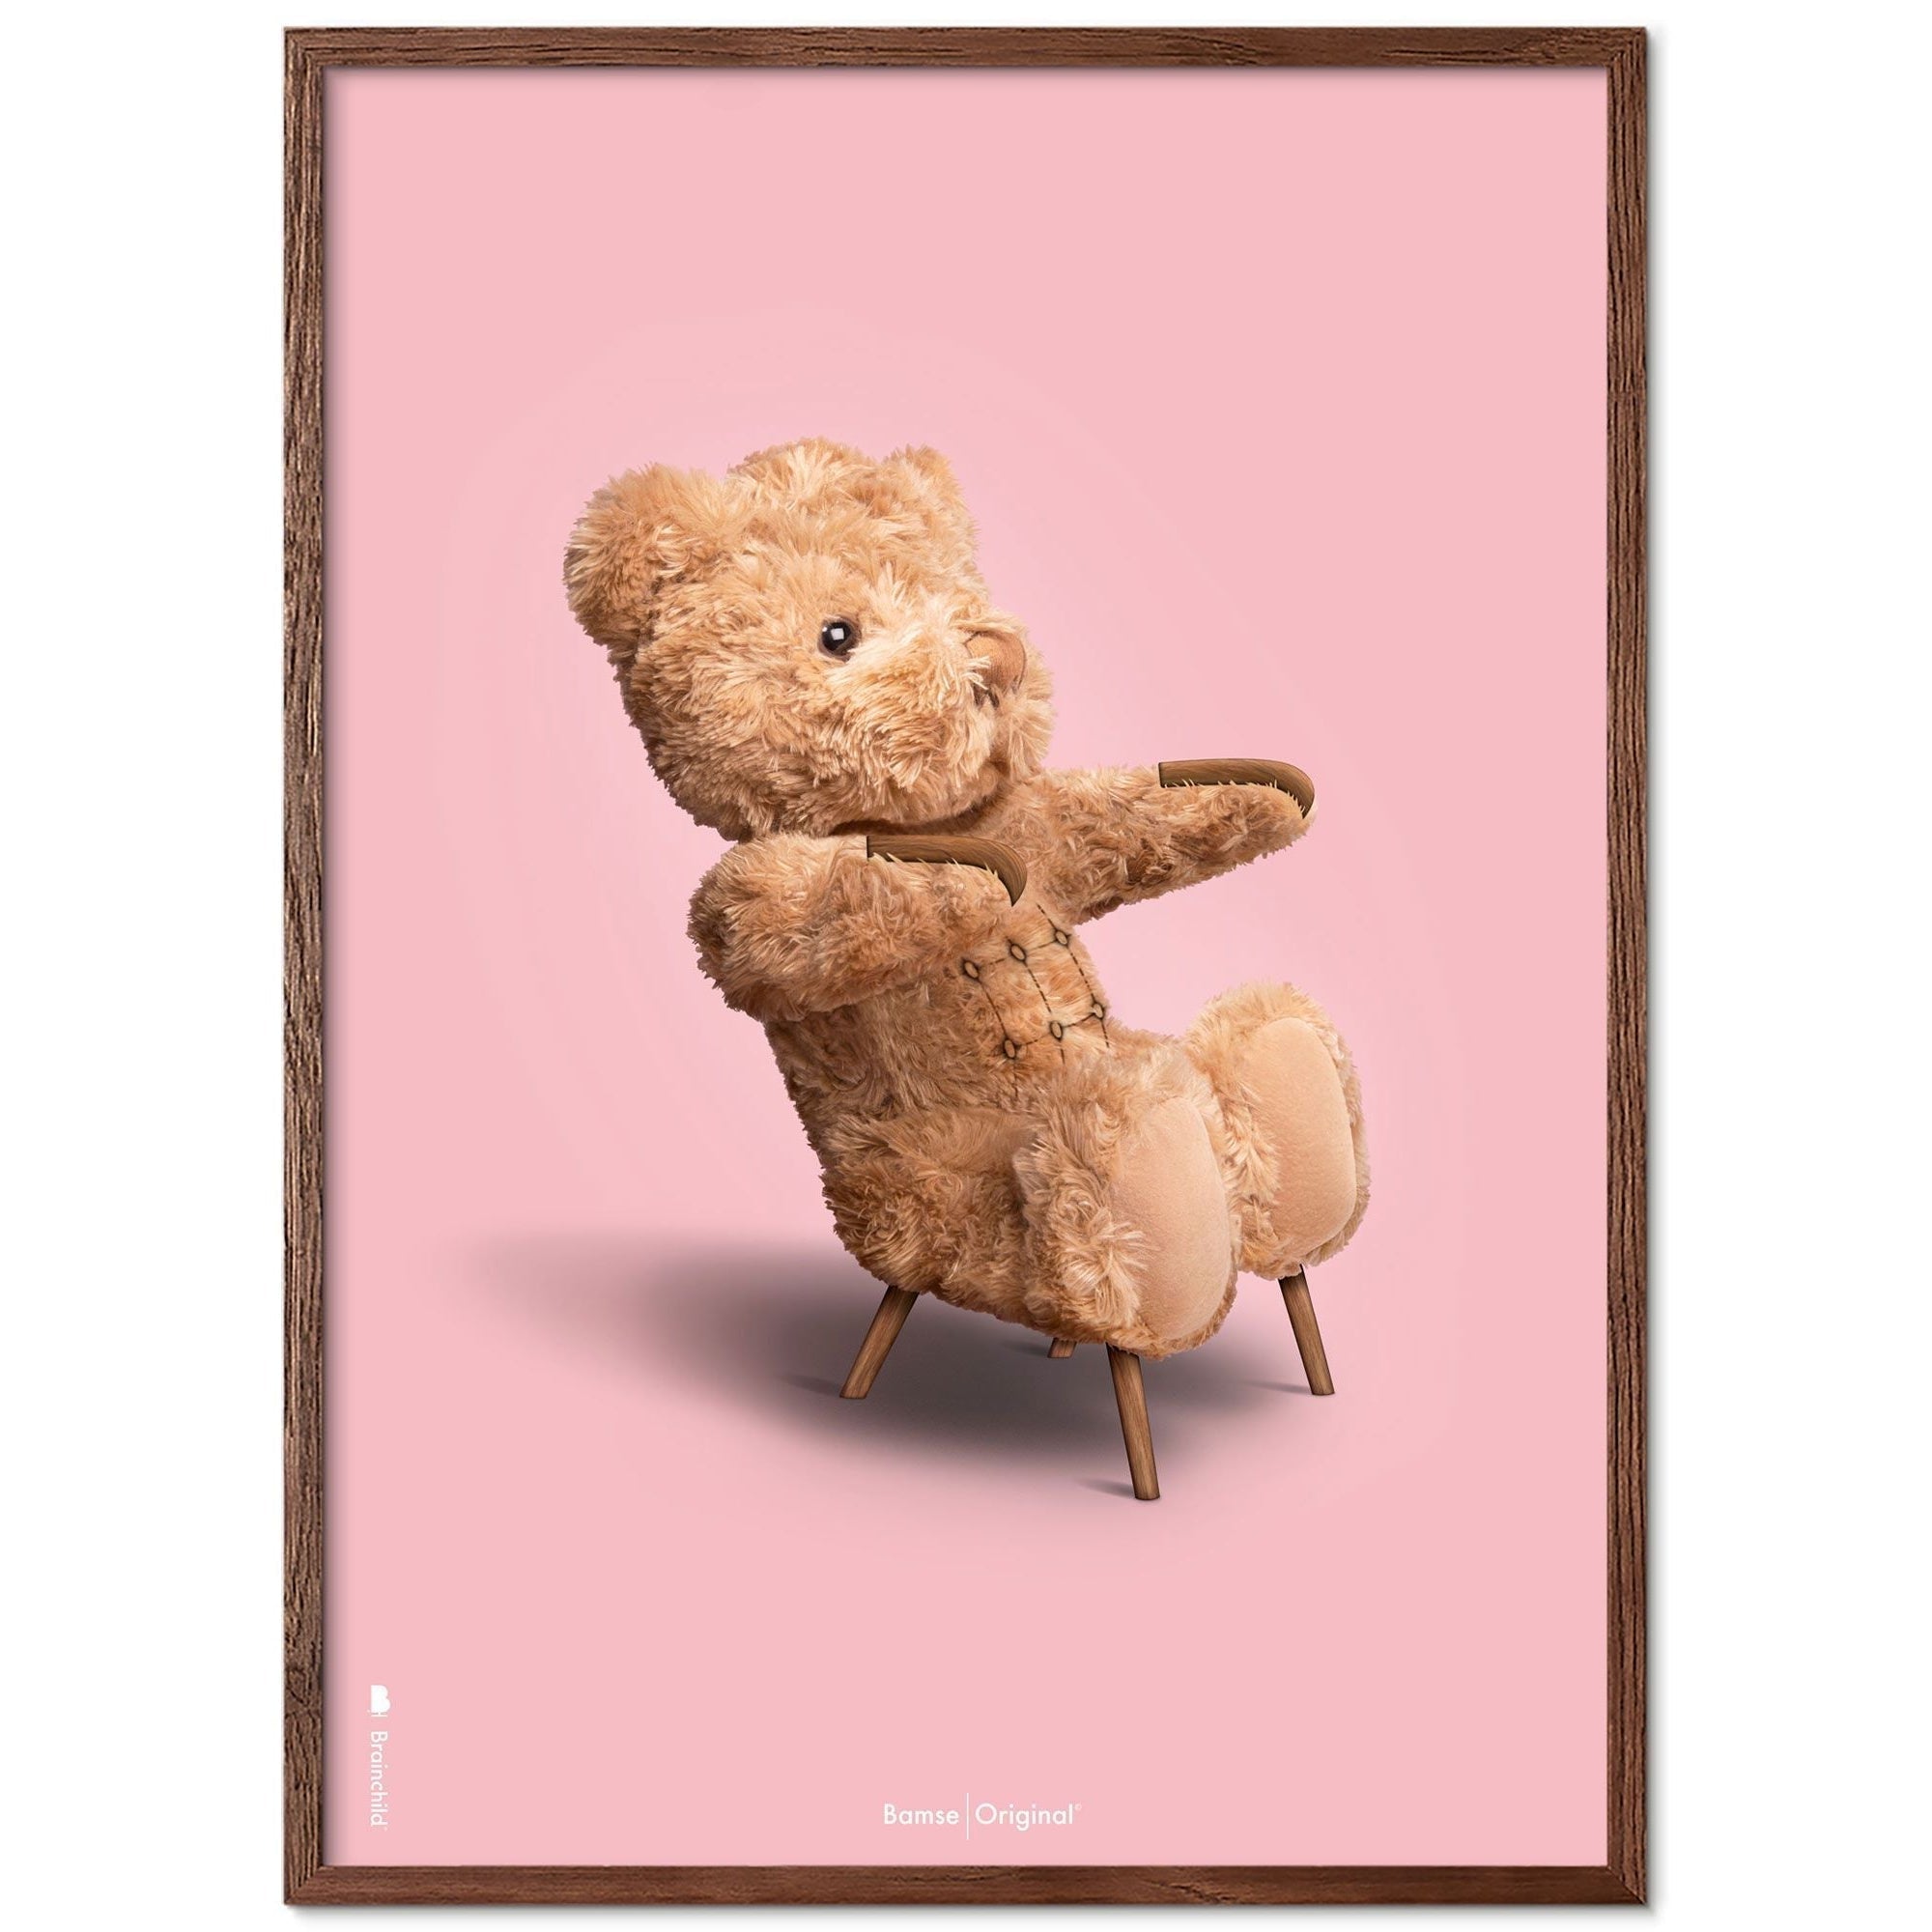 Brainchild Teddybär Classic Poster Frame aus dunklem Holz Ram 30x40 Cm, rosa Hintergrund